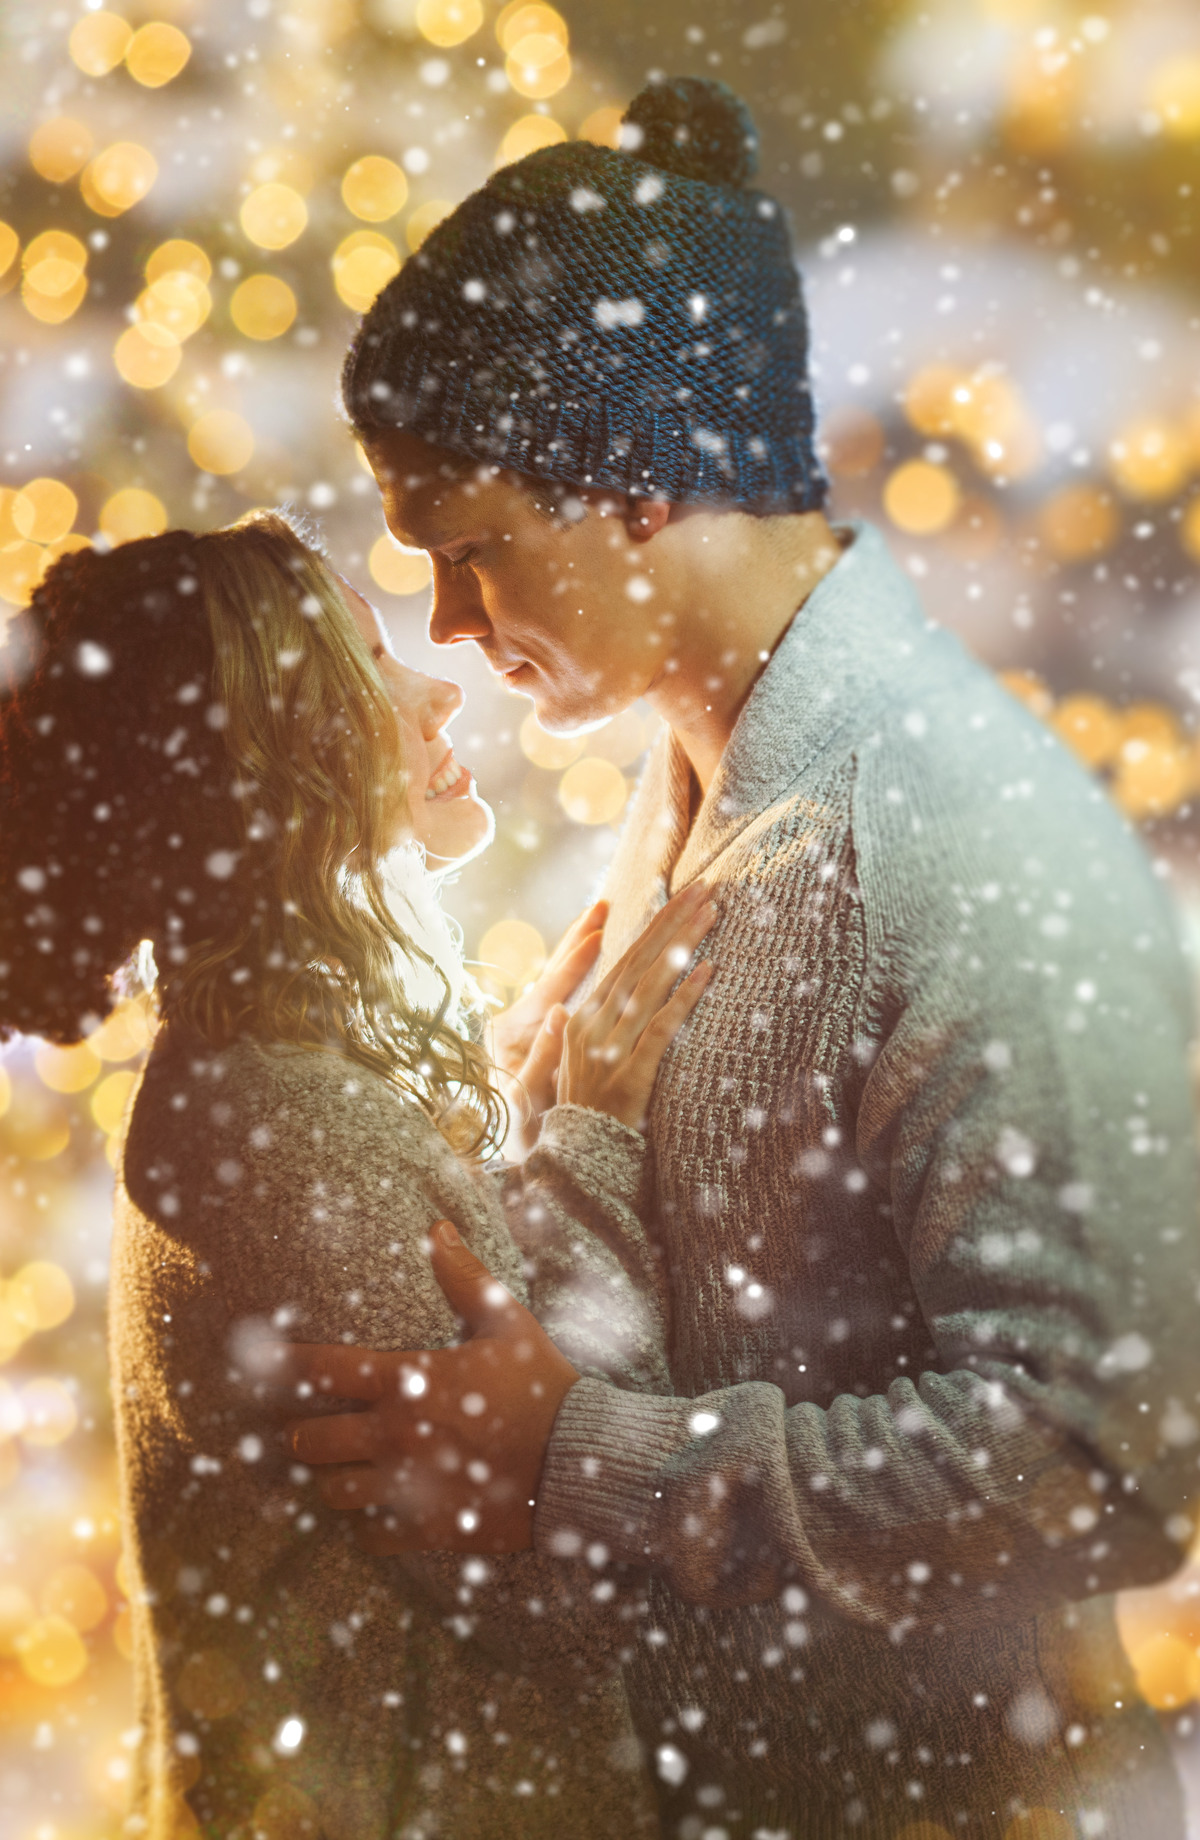 Ein verliebtes Paar in Winterkleidung umarmt sich zärtlich, umgeben von verschwommenen Lichtern und fallenden Schneeflocken.